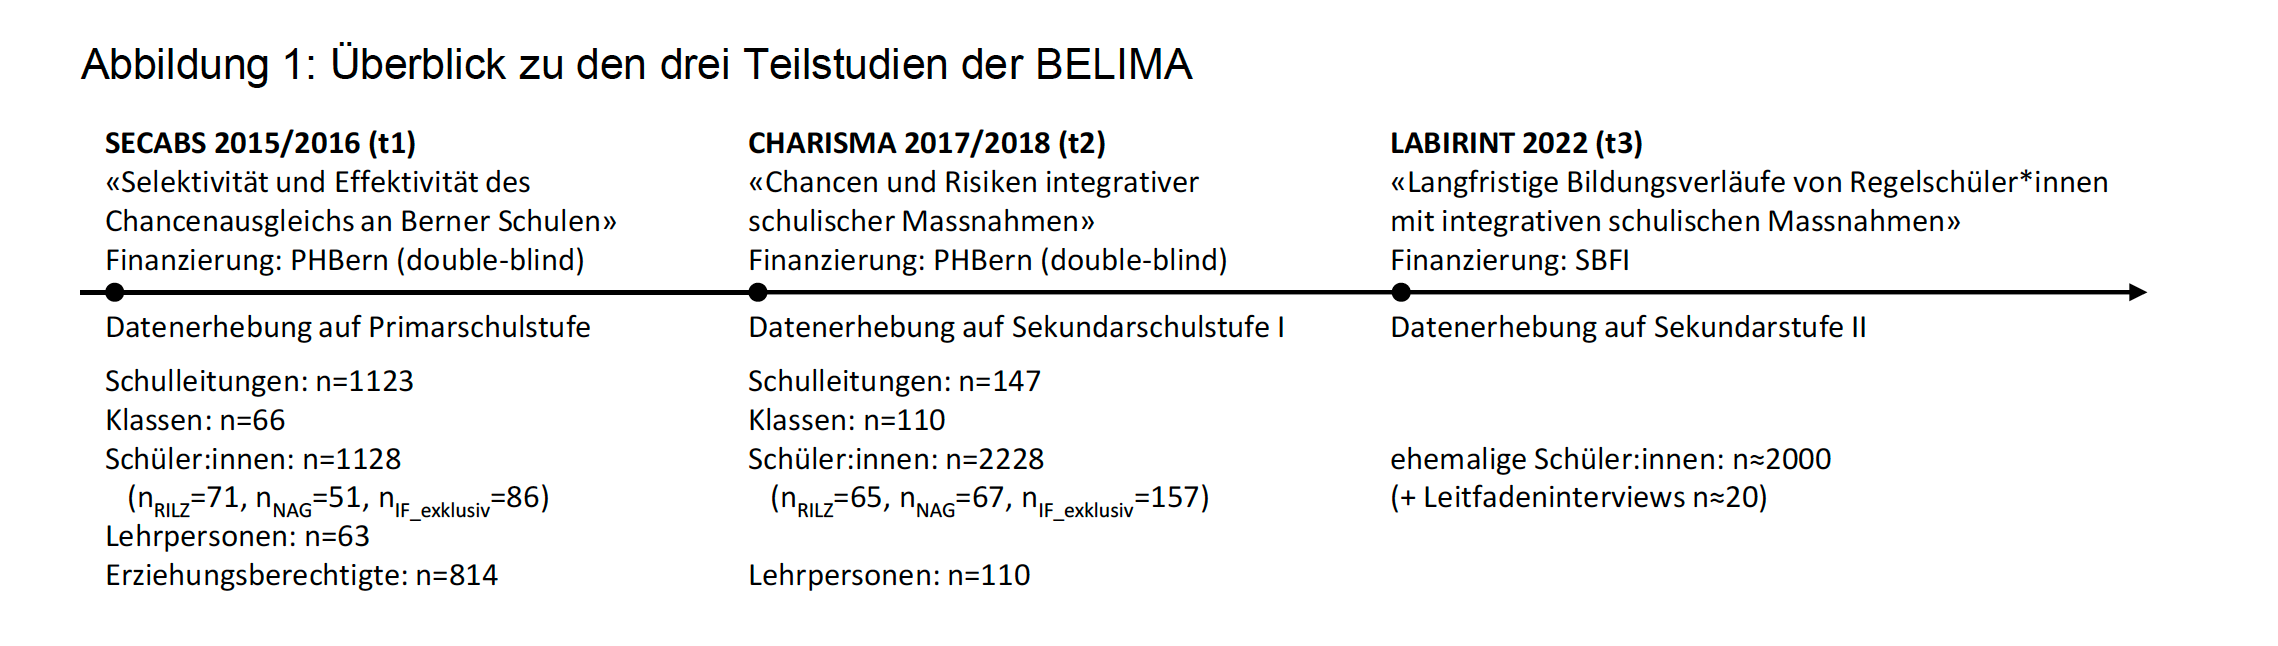 Überblick zu den drei Teilstudien der BELIMA